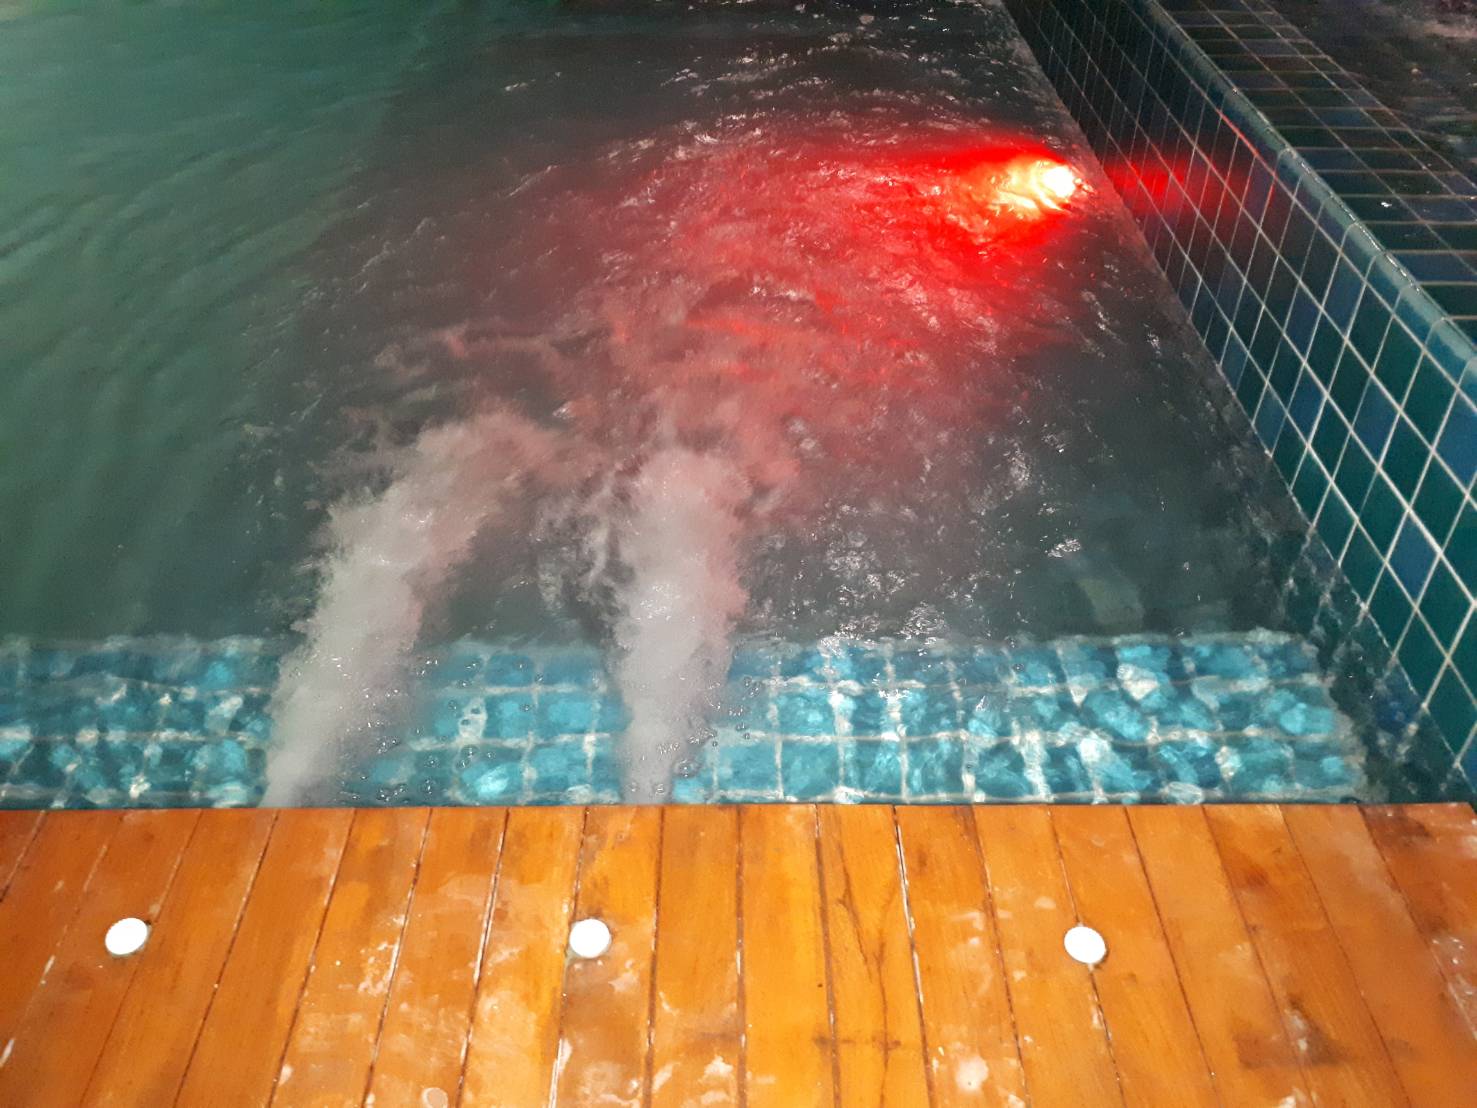 Tcp pool รับสร้างสระว่ายน้ำคอนกรีต